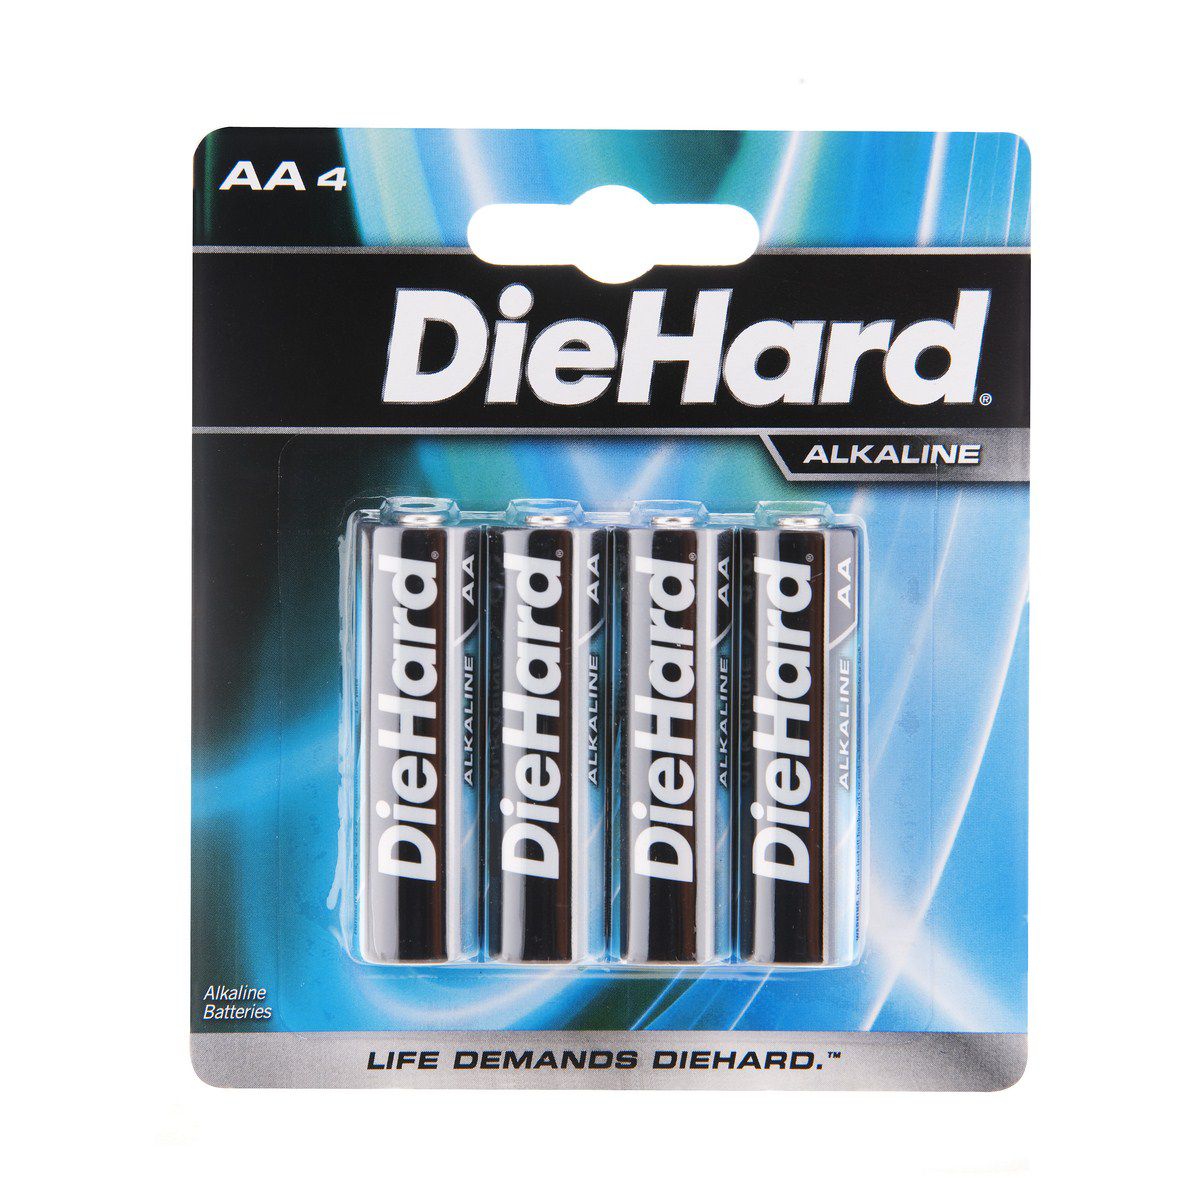 DieHard 41-1170 4 pack AA size Alkaline battery